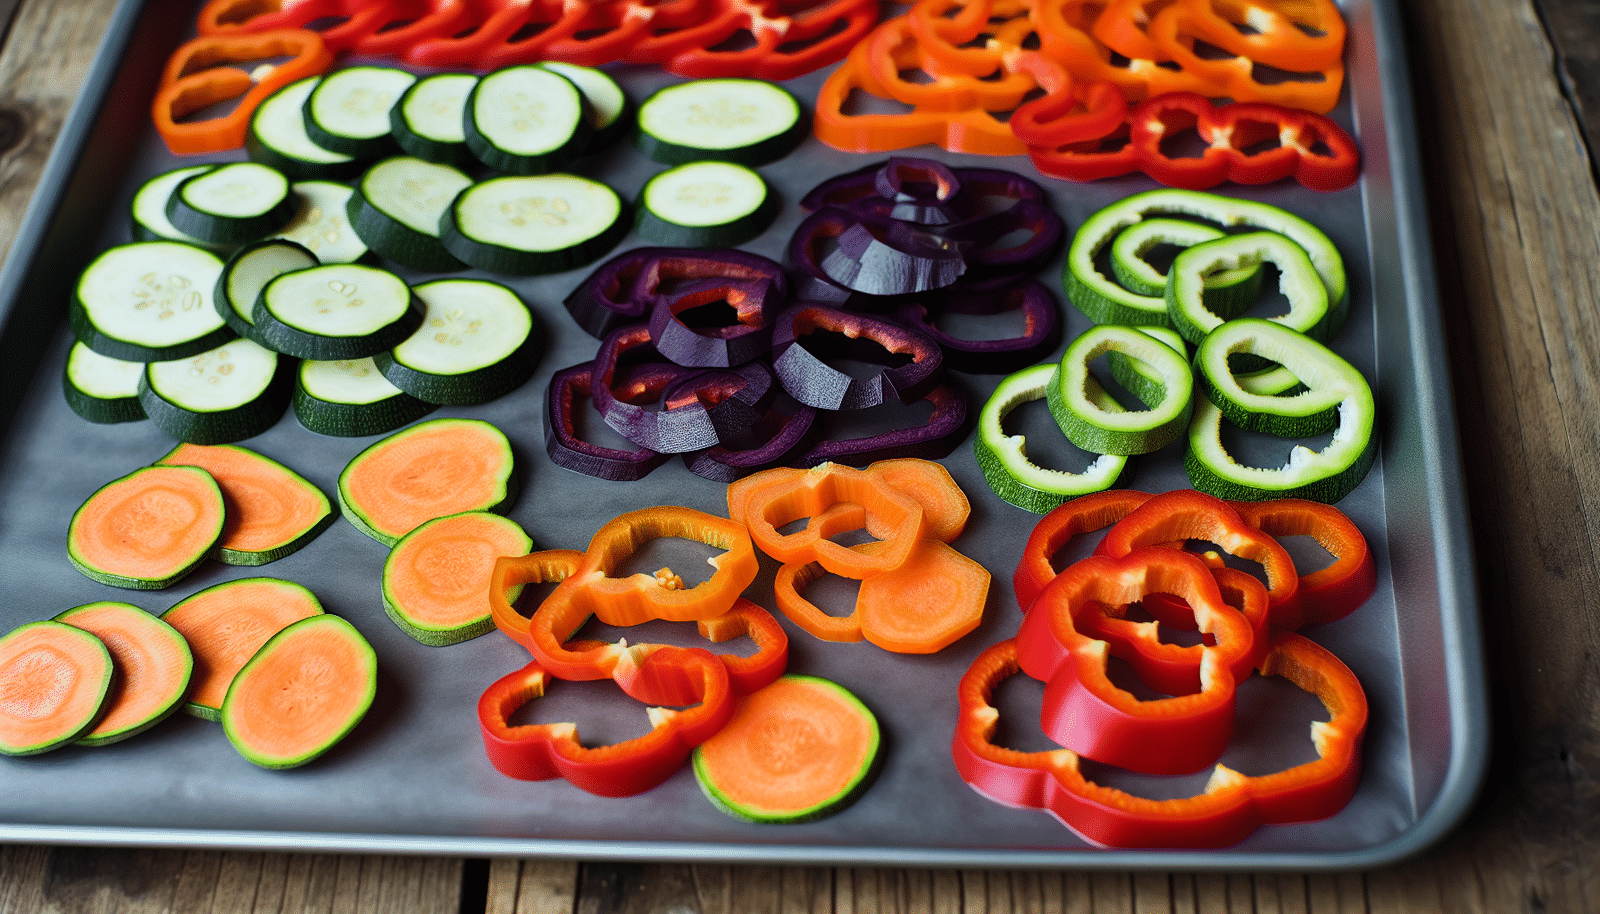 Arranging vegetable slices on a baking sheet